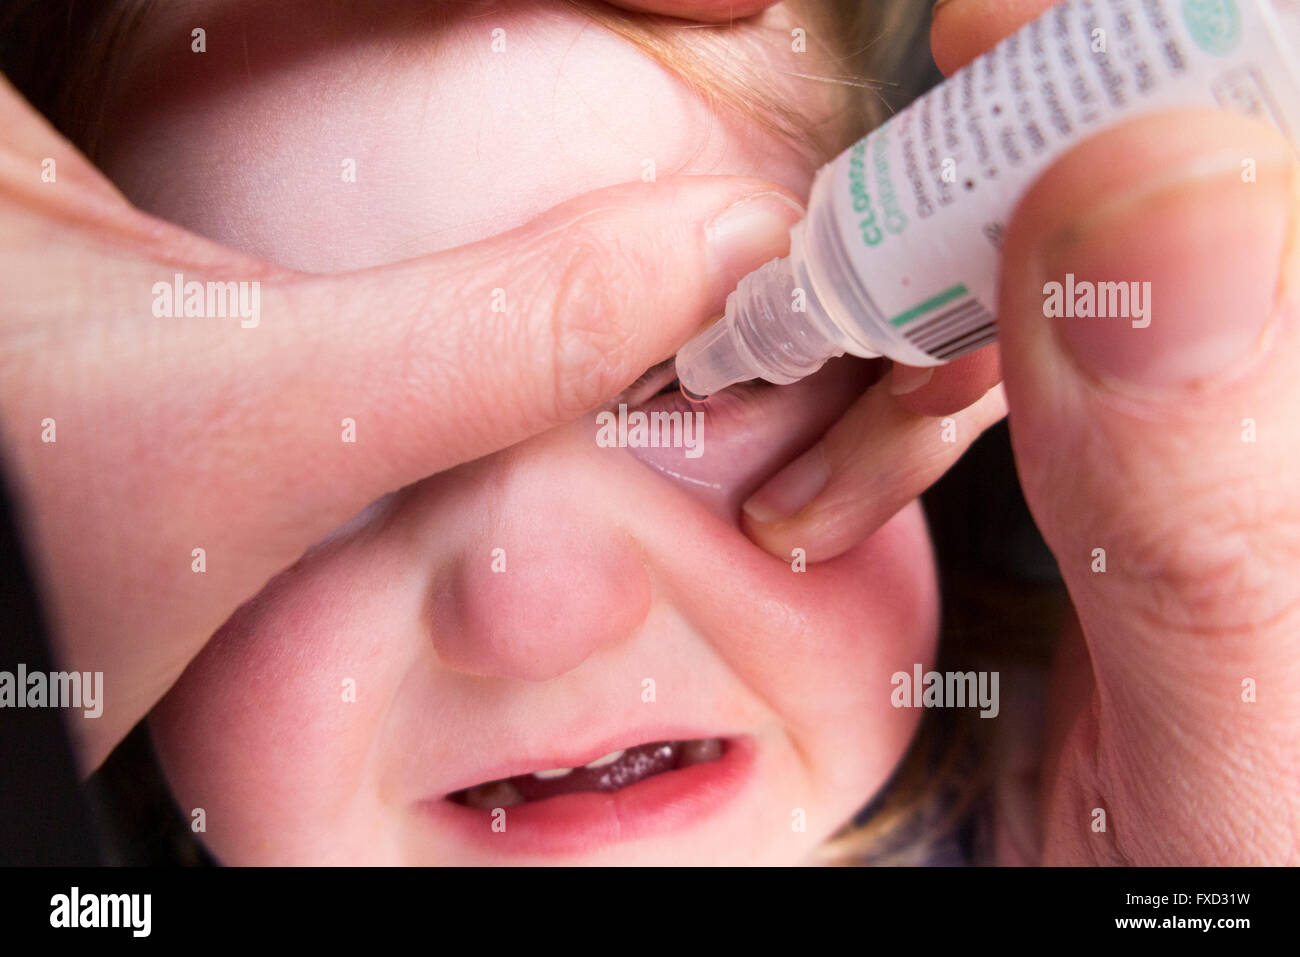 20 Monate altes Kind / Kind Kleinkind Baby mit Bindehautentzündung  antibiotische Augentropfen Tropfen von ihrer Mutter gegeben werden / Mutter  Stockfotografie - Alamy